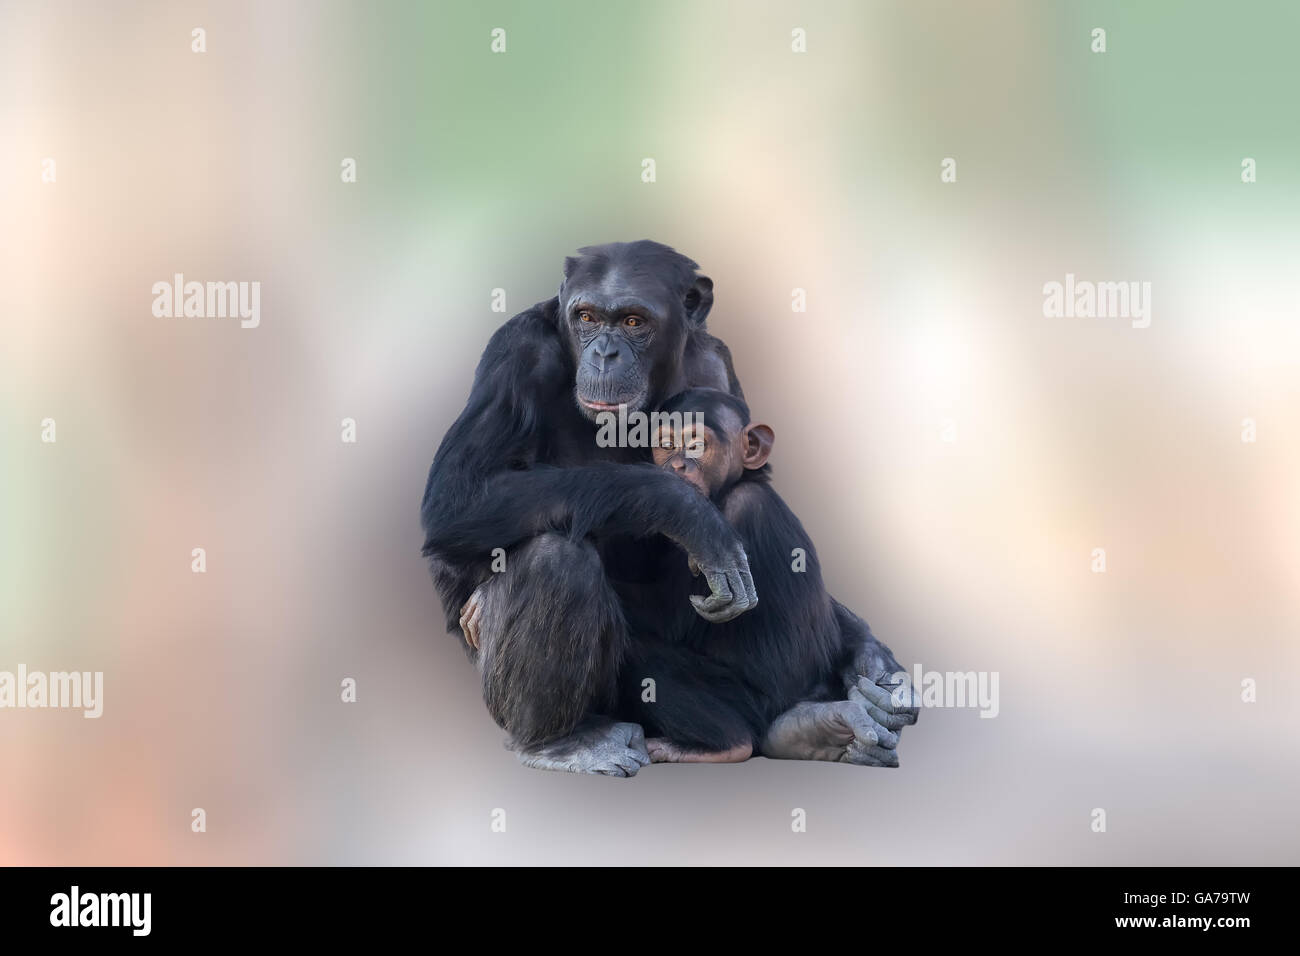 Mutter Schimpansen umarmen ihr Baby. Ein liebevoller Moment zwischen den Tieren auf eine abstrakte und bunten Hintergrund. Delphine spielen und Stockfoto